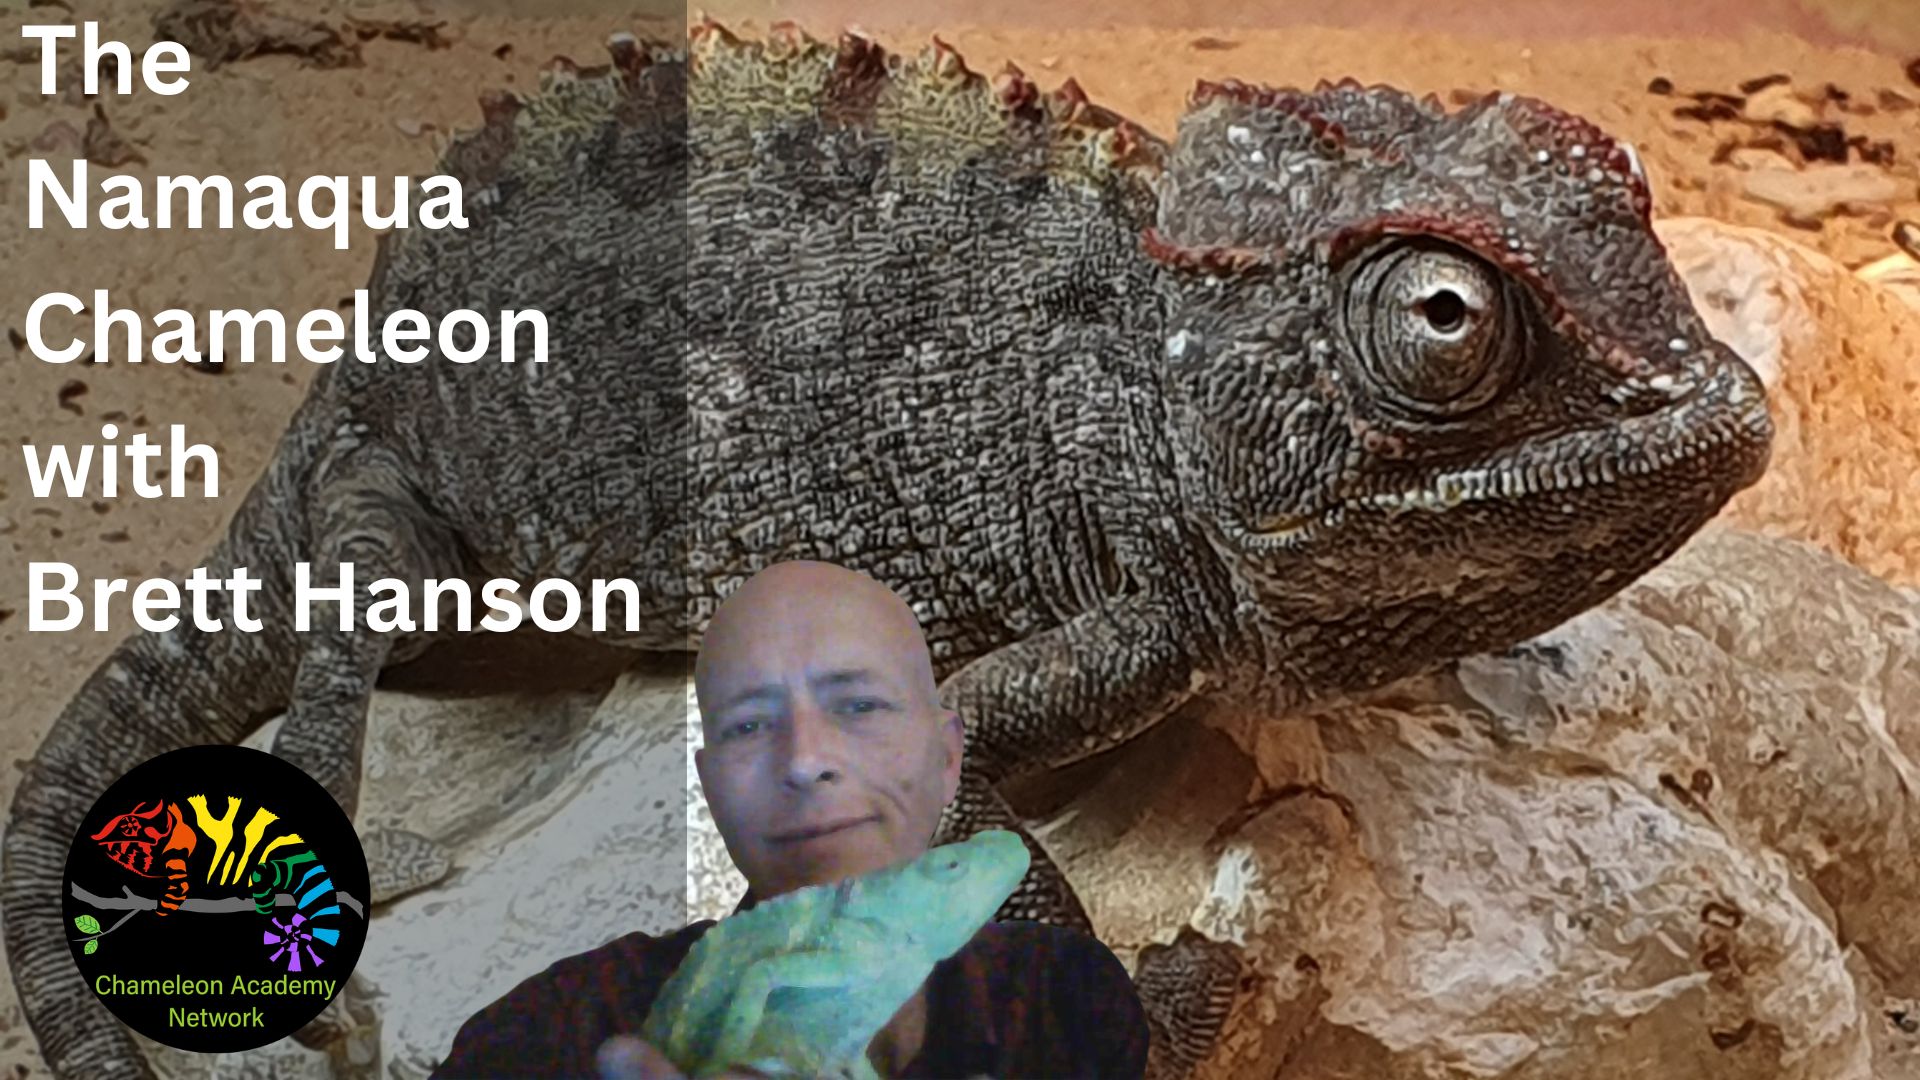 Namaqua Chameleon and Brett Hanson